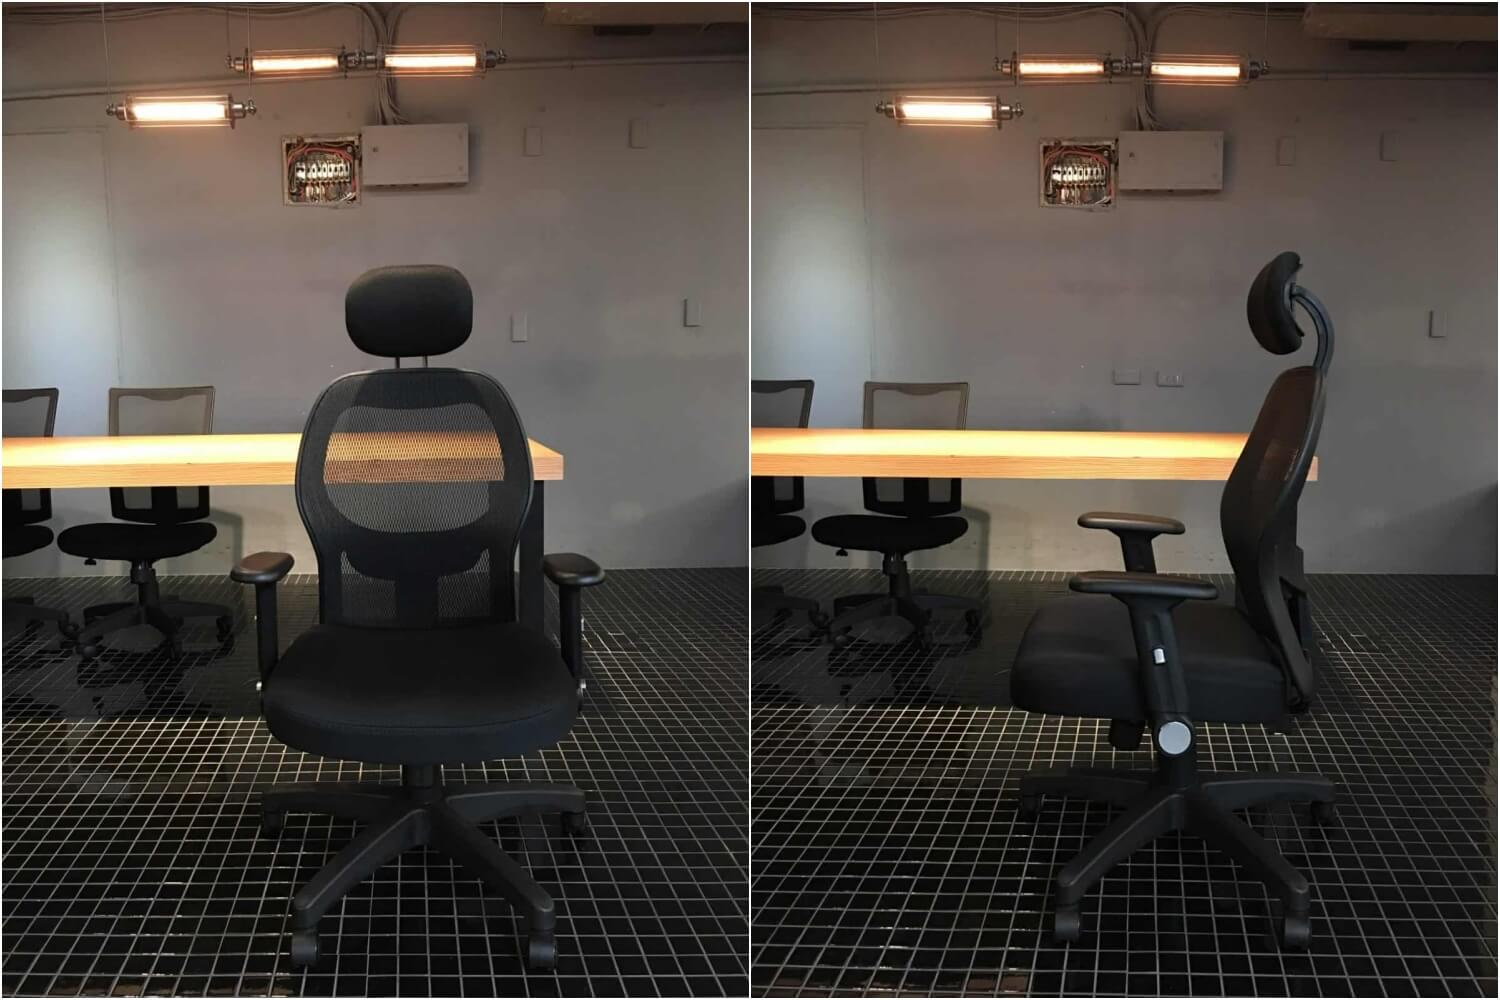 3. 電腦椅推薦：Realf Comfo K1 人體工學椅